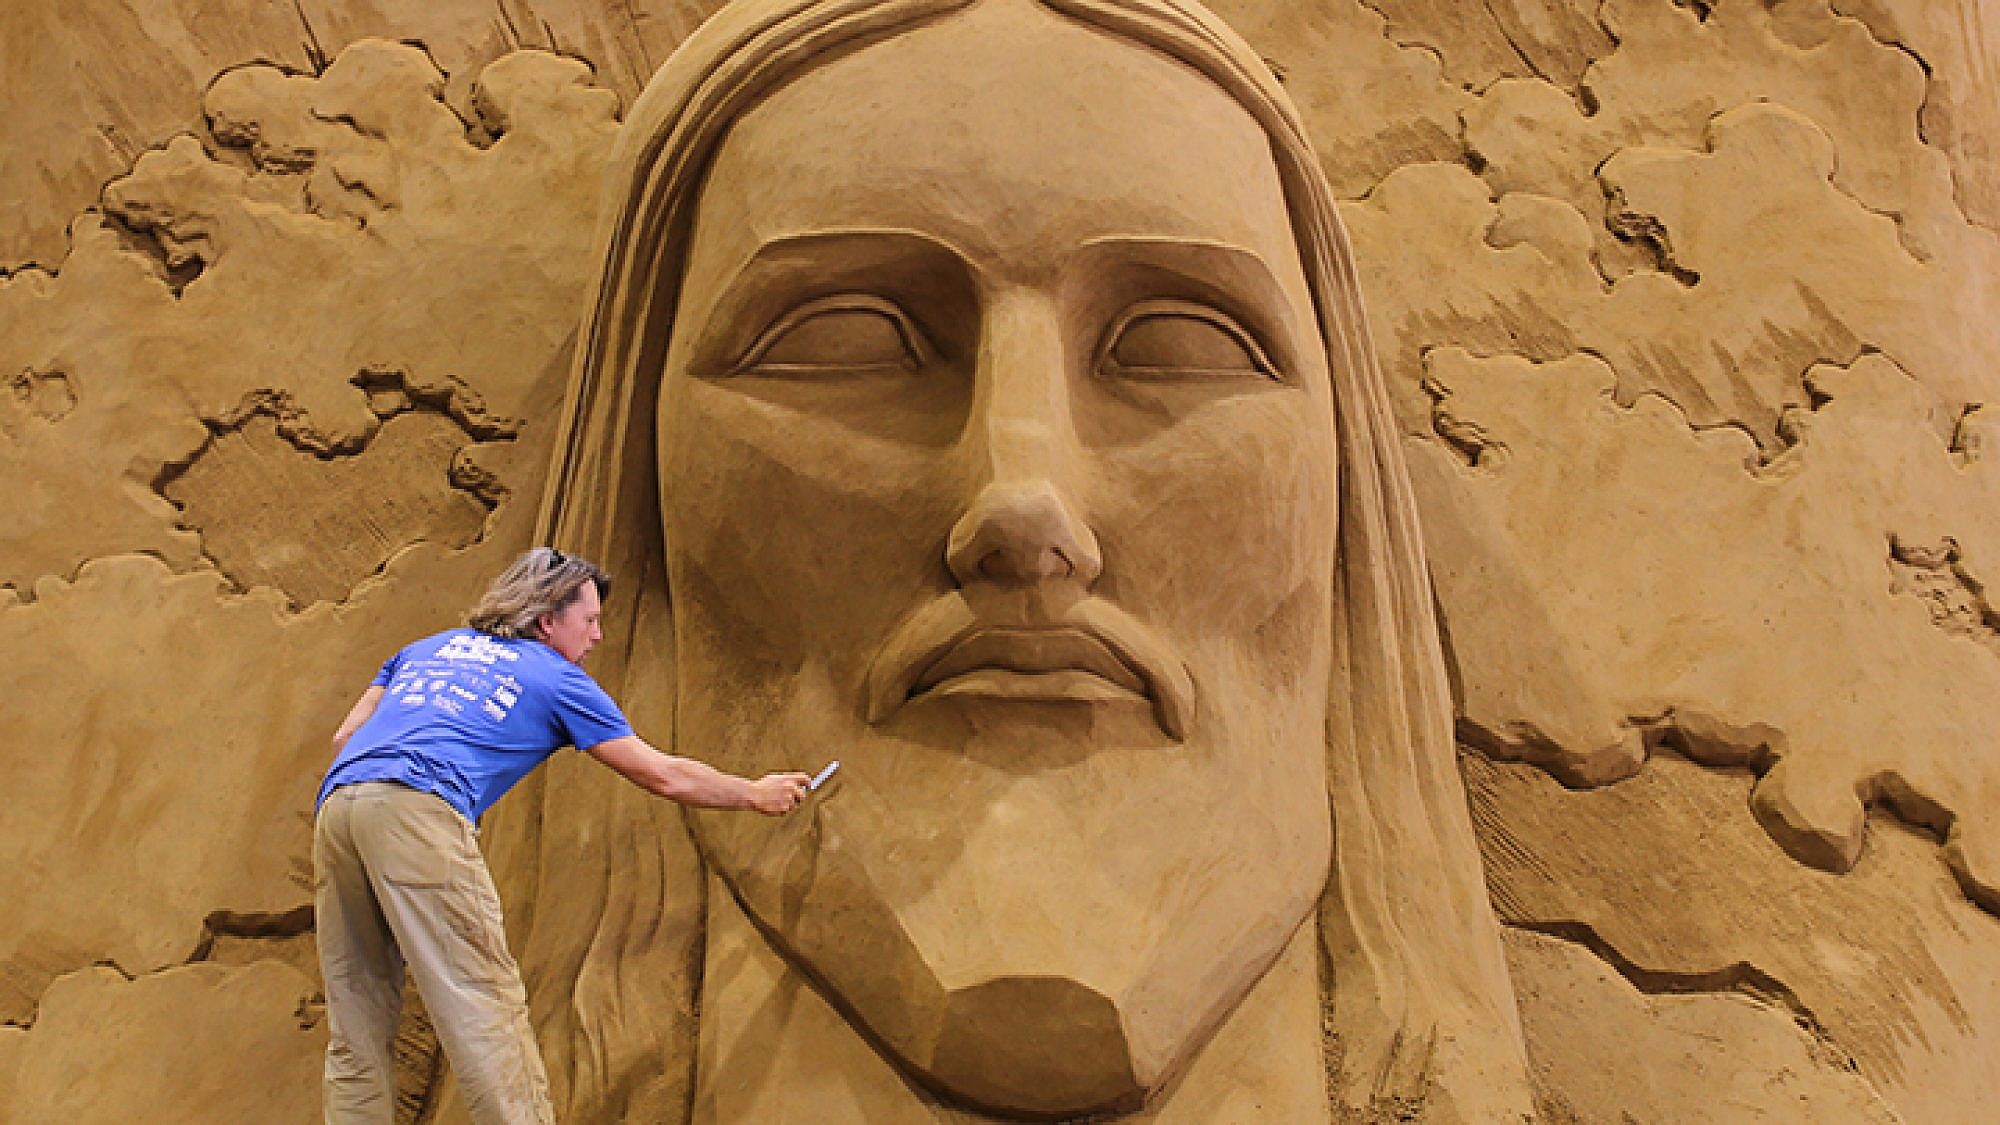 פסל חול בדמותו של פסל ישו מריו דה ז'ניירו. צילום: אימג' בנק